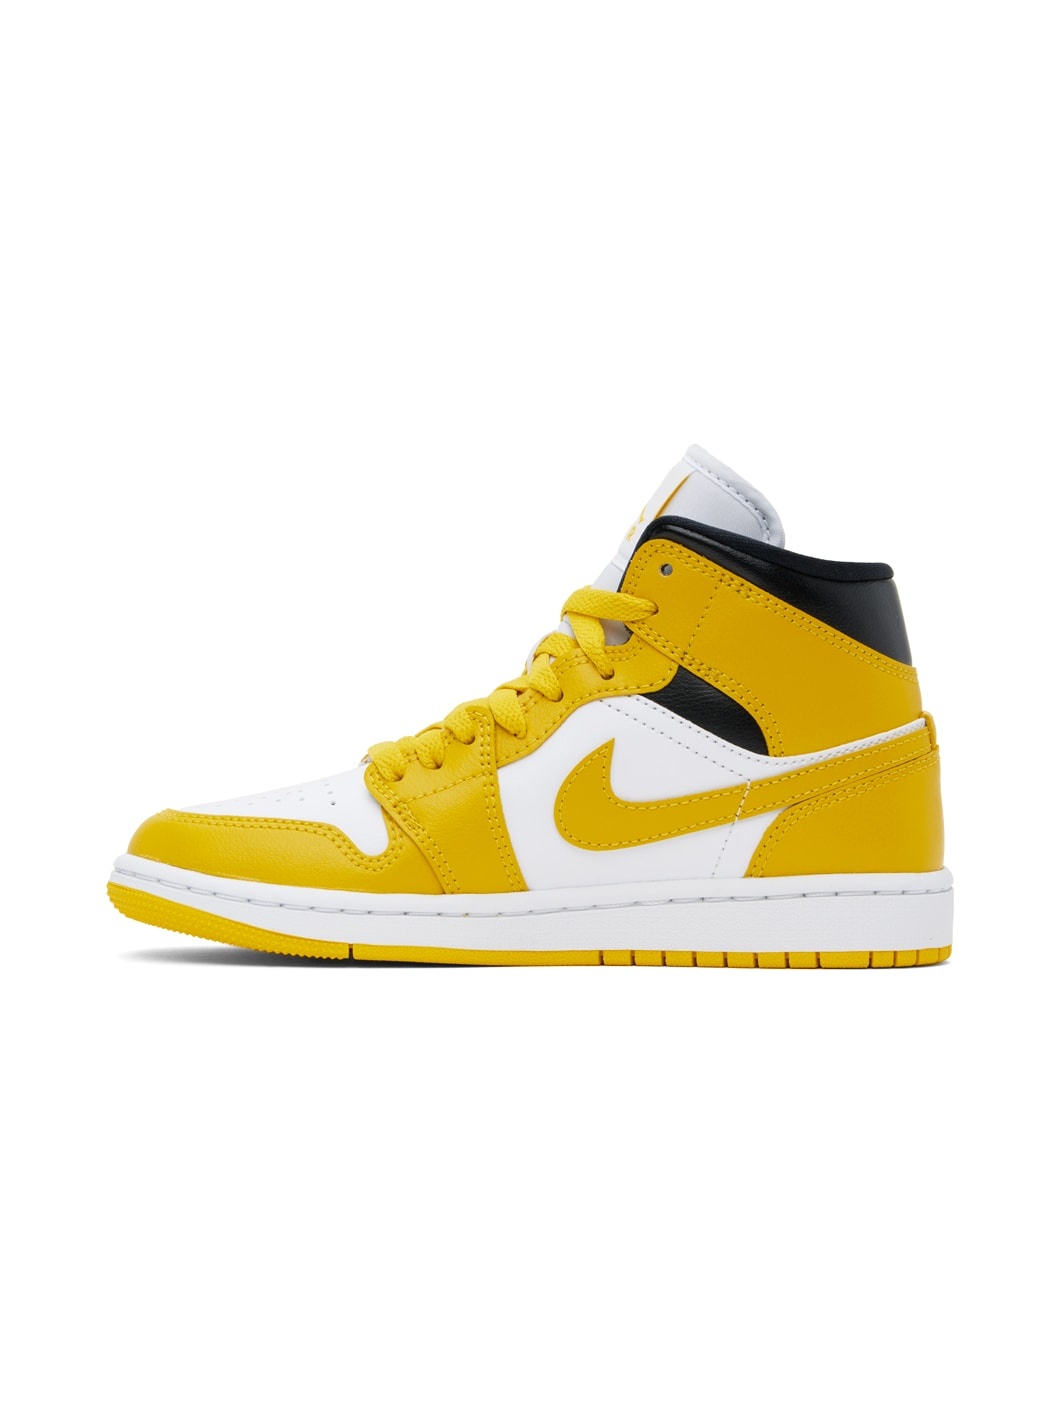 White & Yellow Air Jordan 1 Mid Sneakers - 3